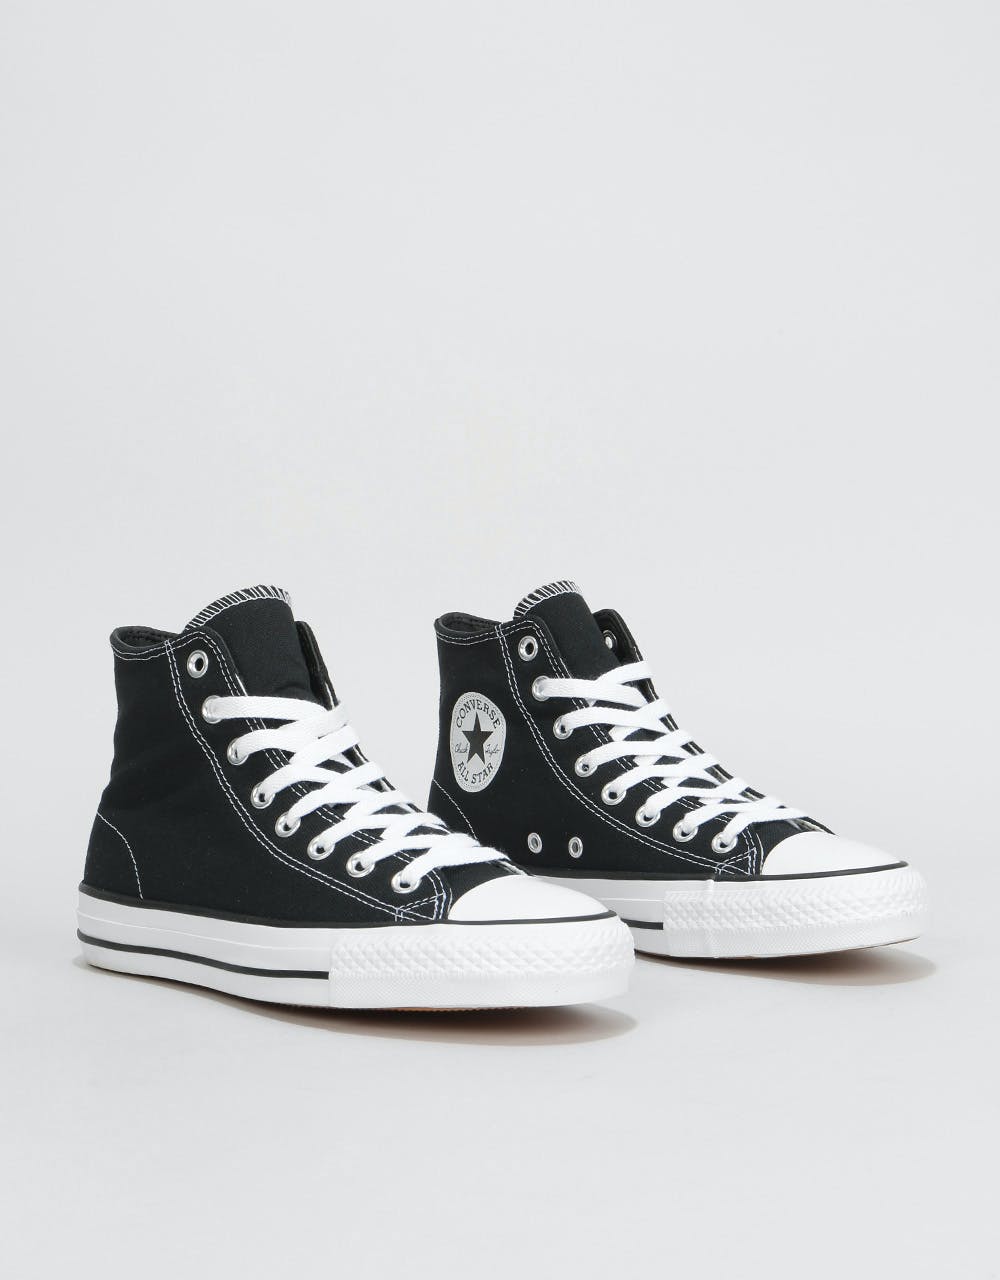 Converse CTAS Pro Hi Canvas Skate Shoes - Black/Black/White